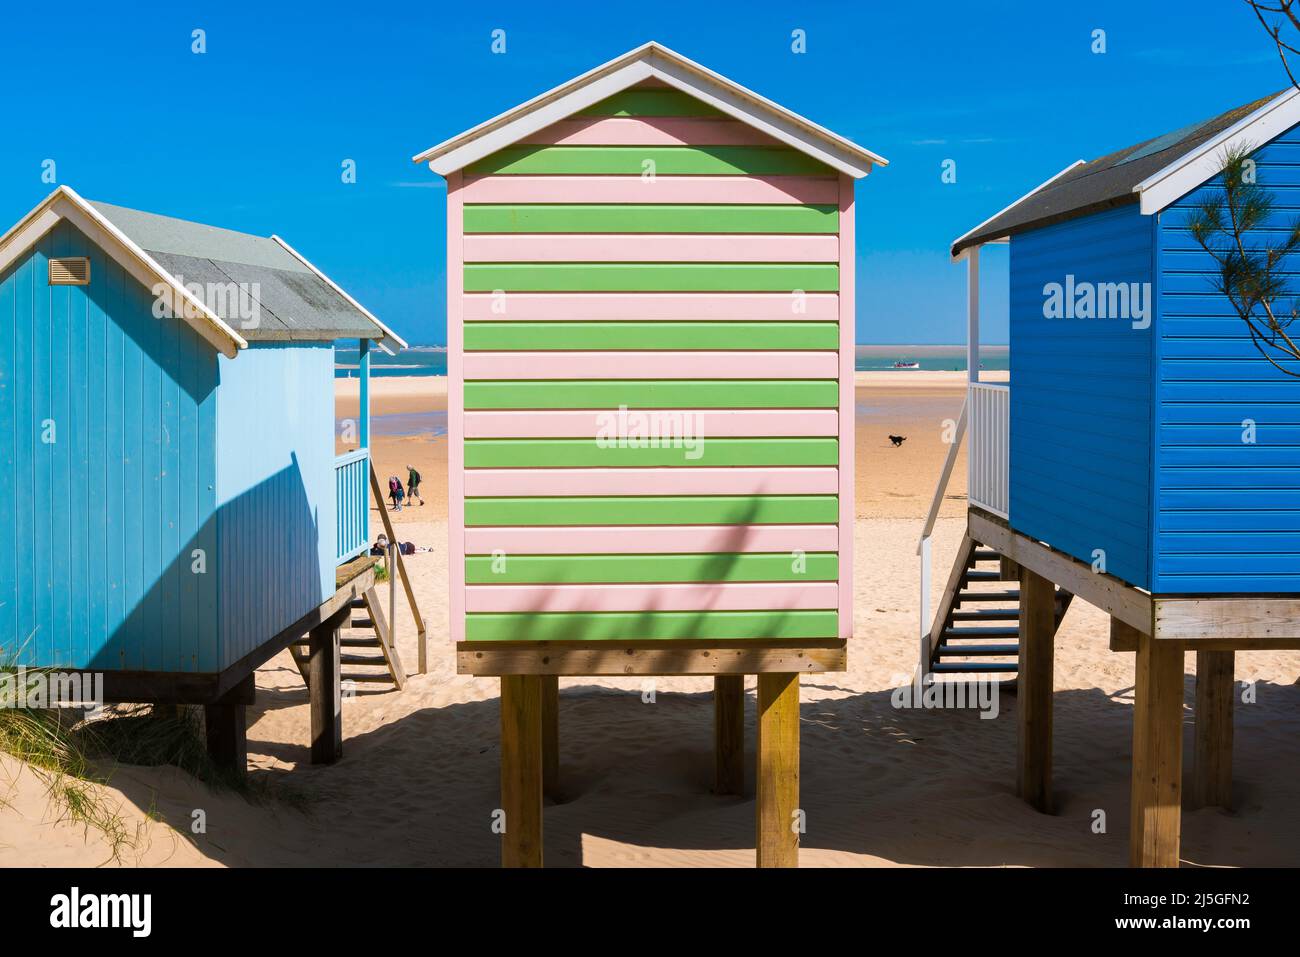 Strandhütte, Rückansicht im Sommer von traditionellen Strandhütten mit Blick auf den Sandstrand von Wells-Next-the Sea an der nördlichen Norfolk-Küste, England, Großbritannien Stockfoto